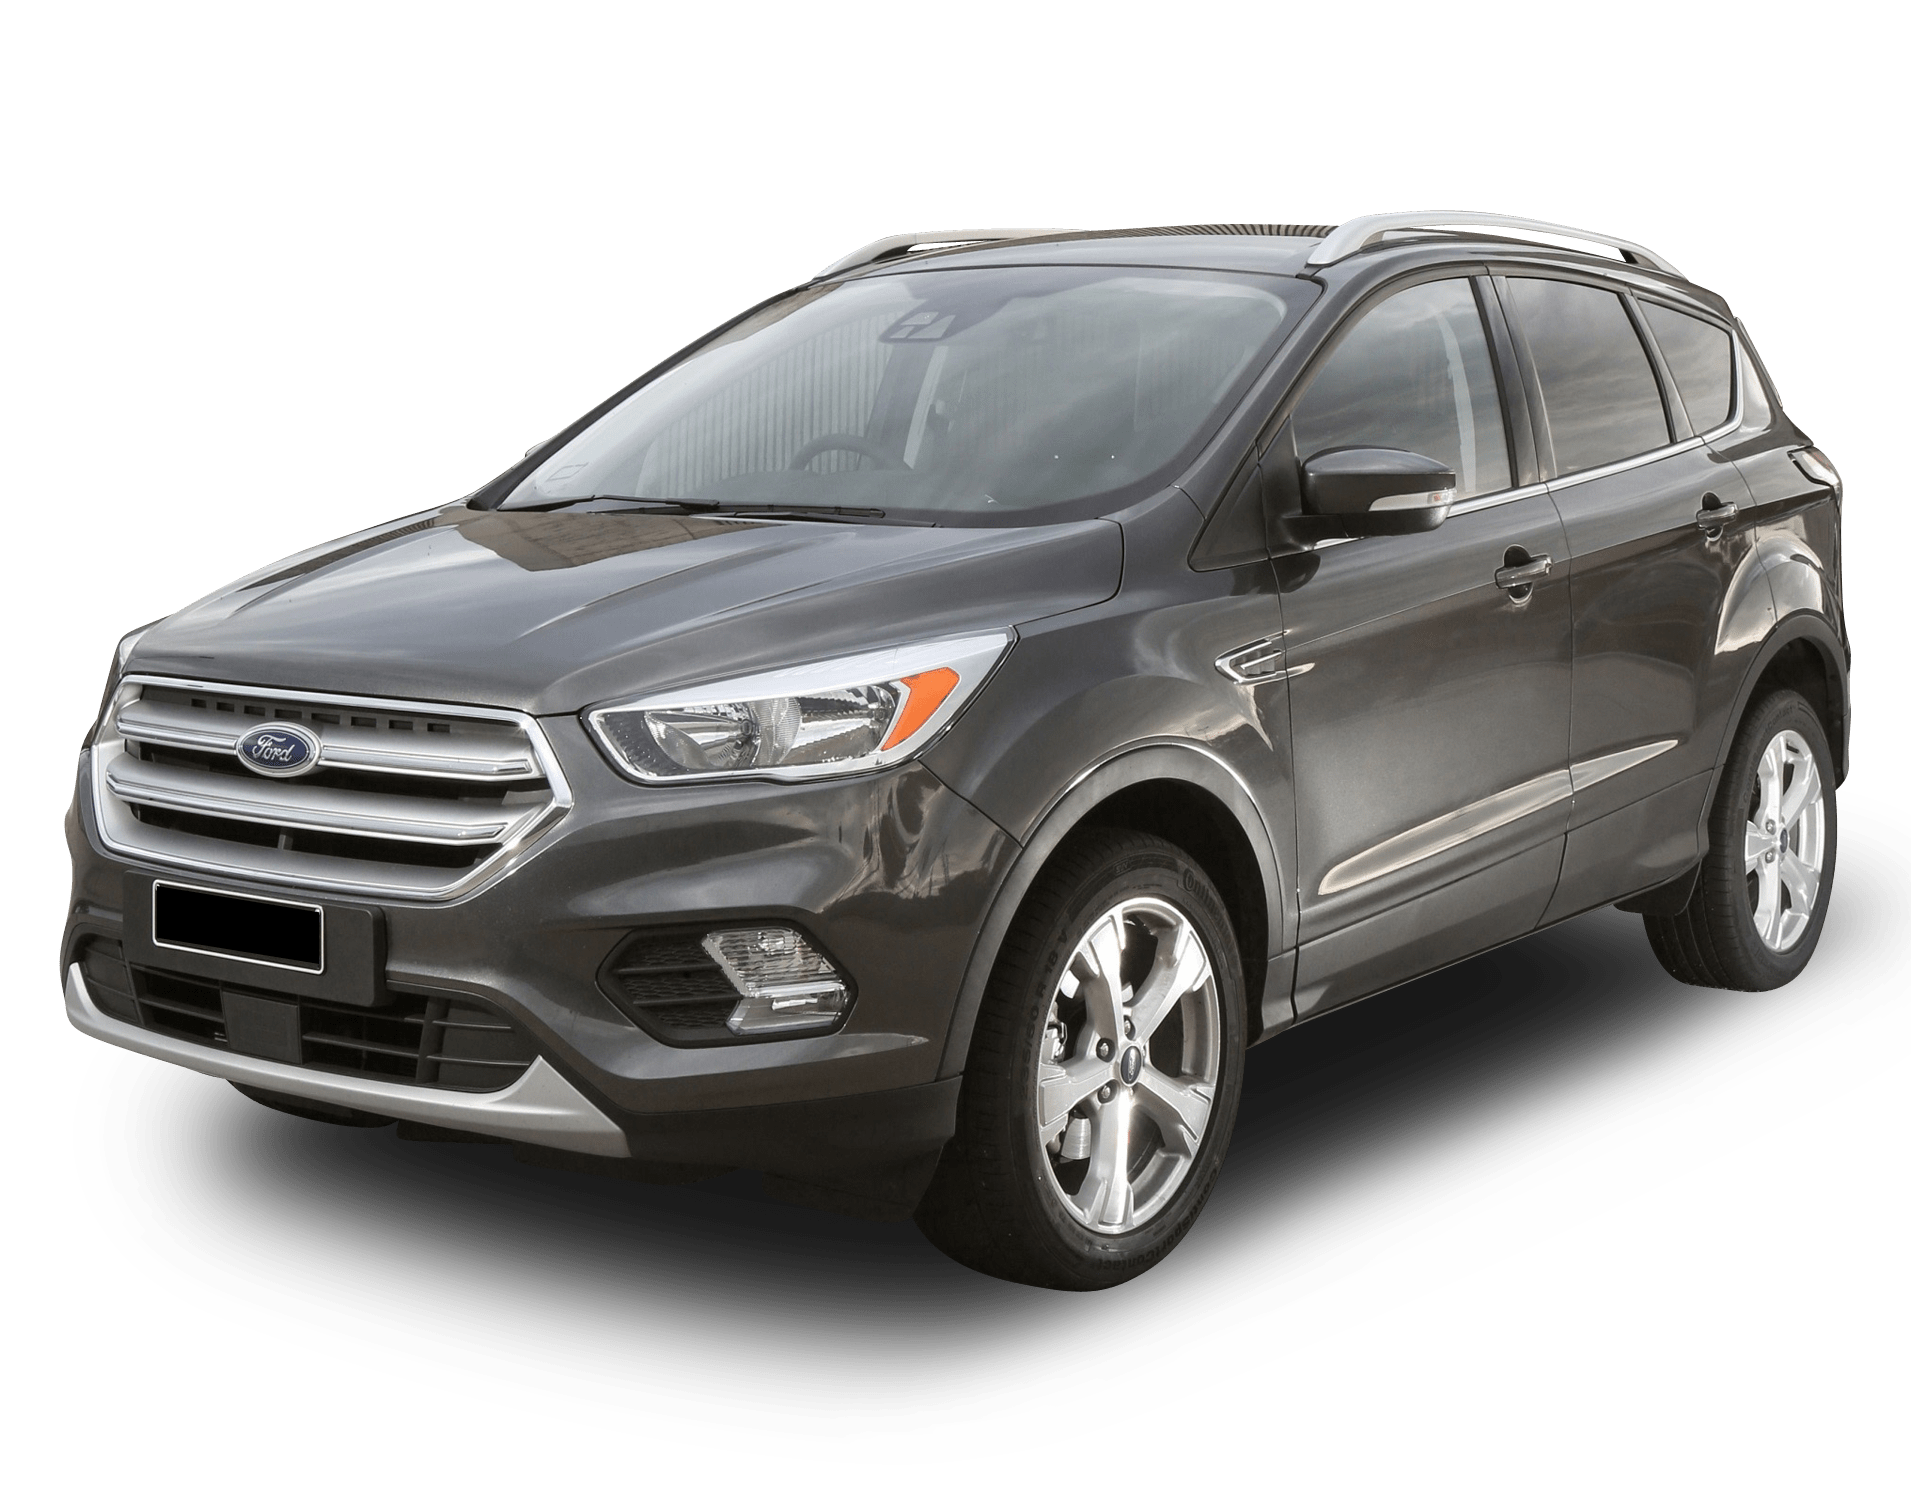 2019 Ford Escape Model Research